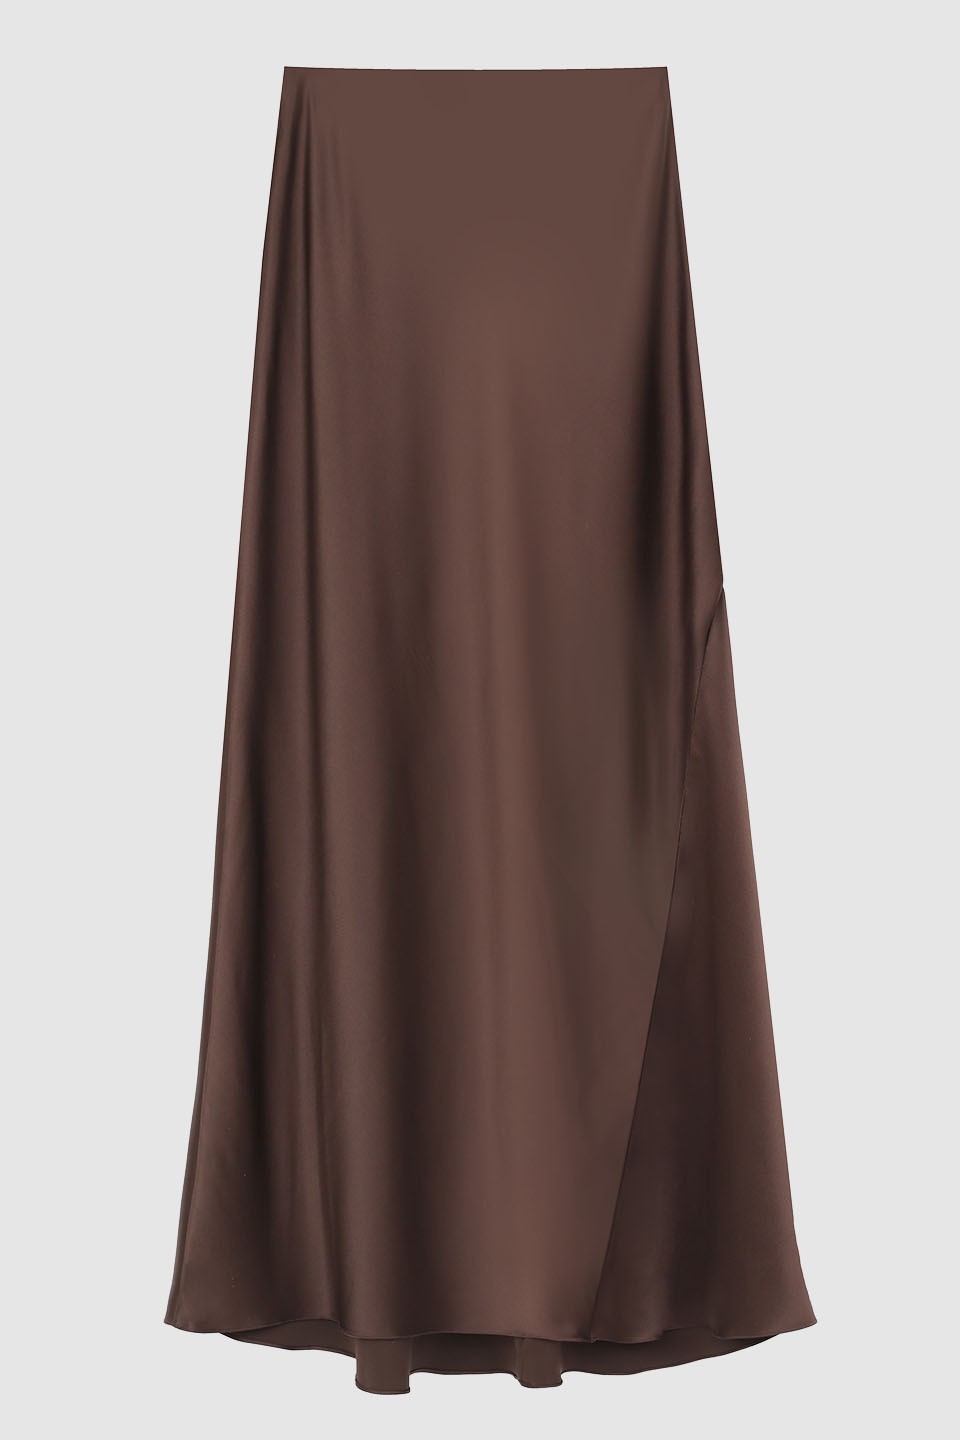 Brown silk skirt